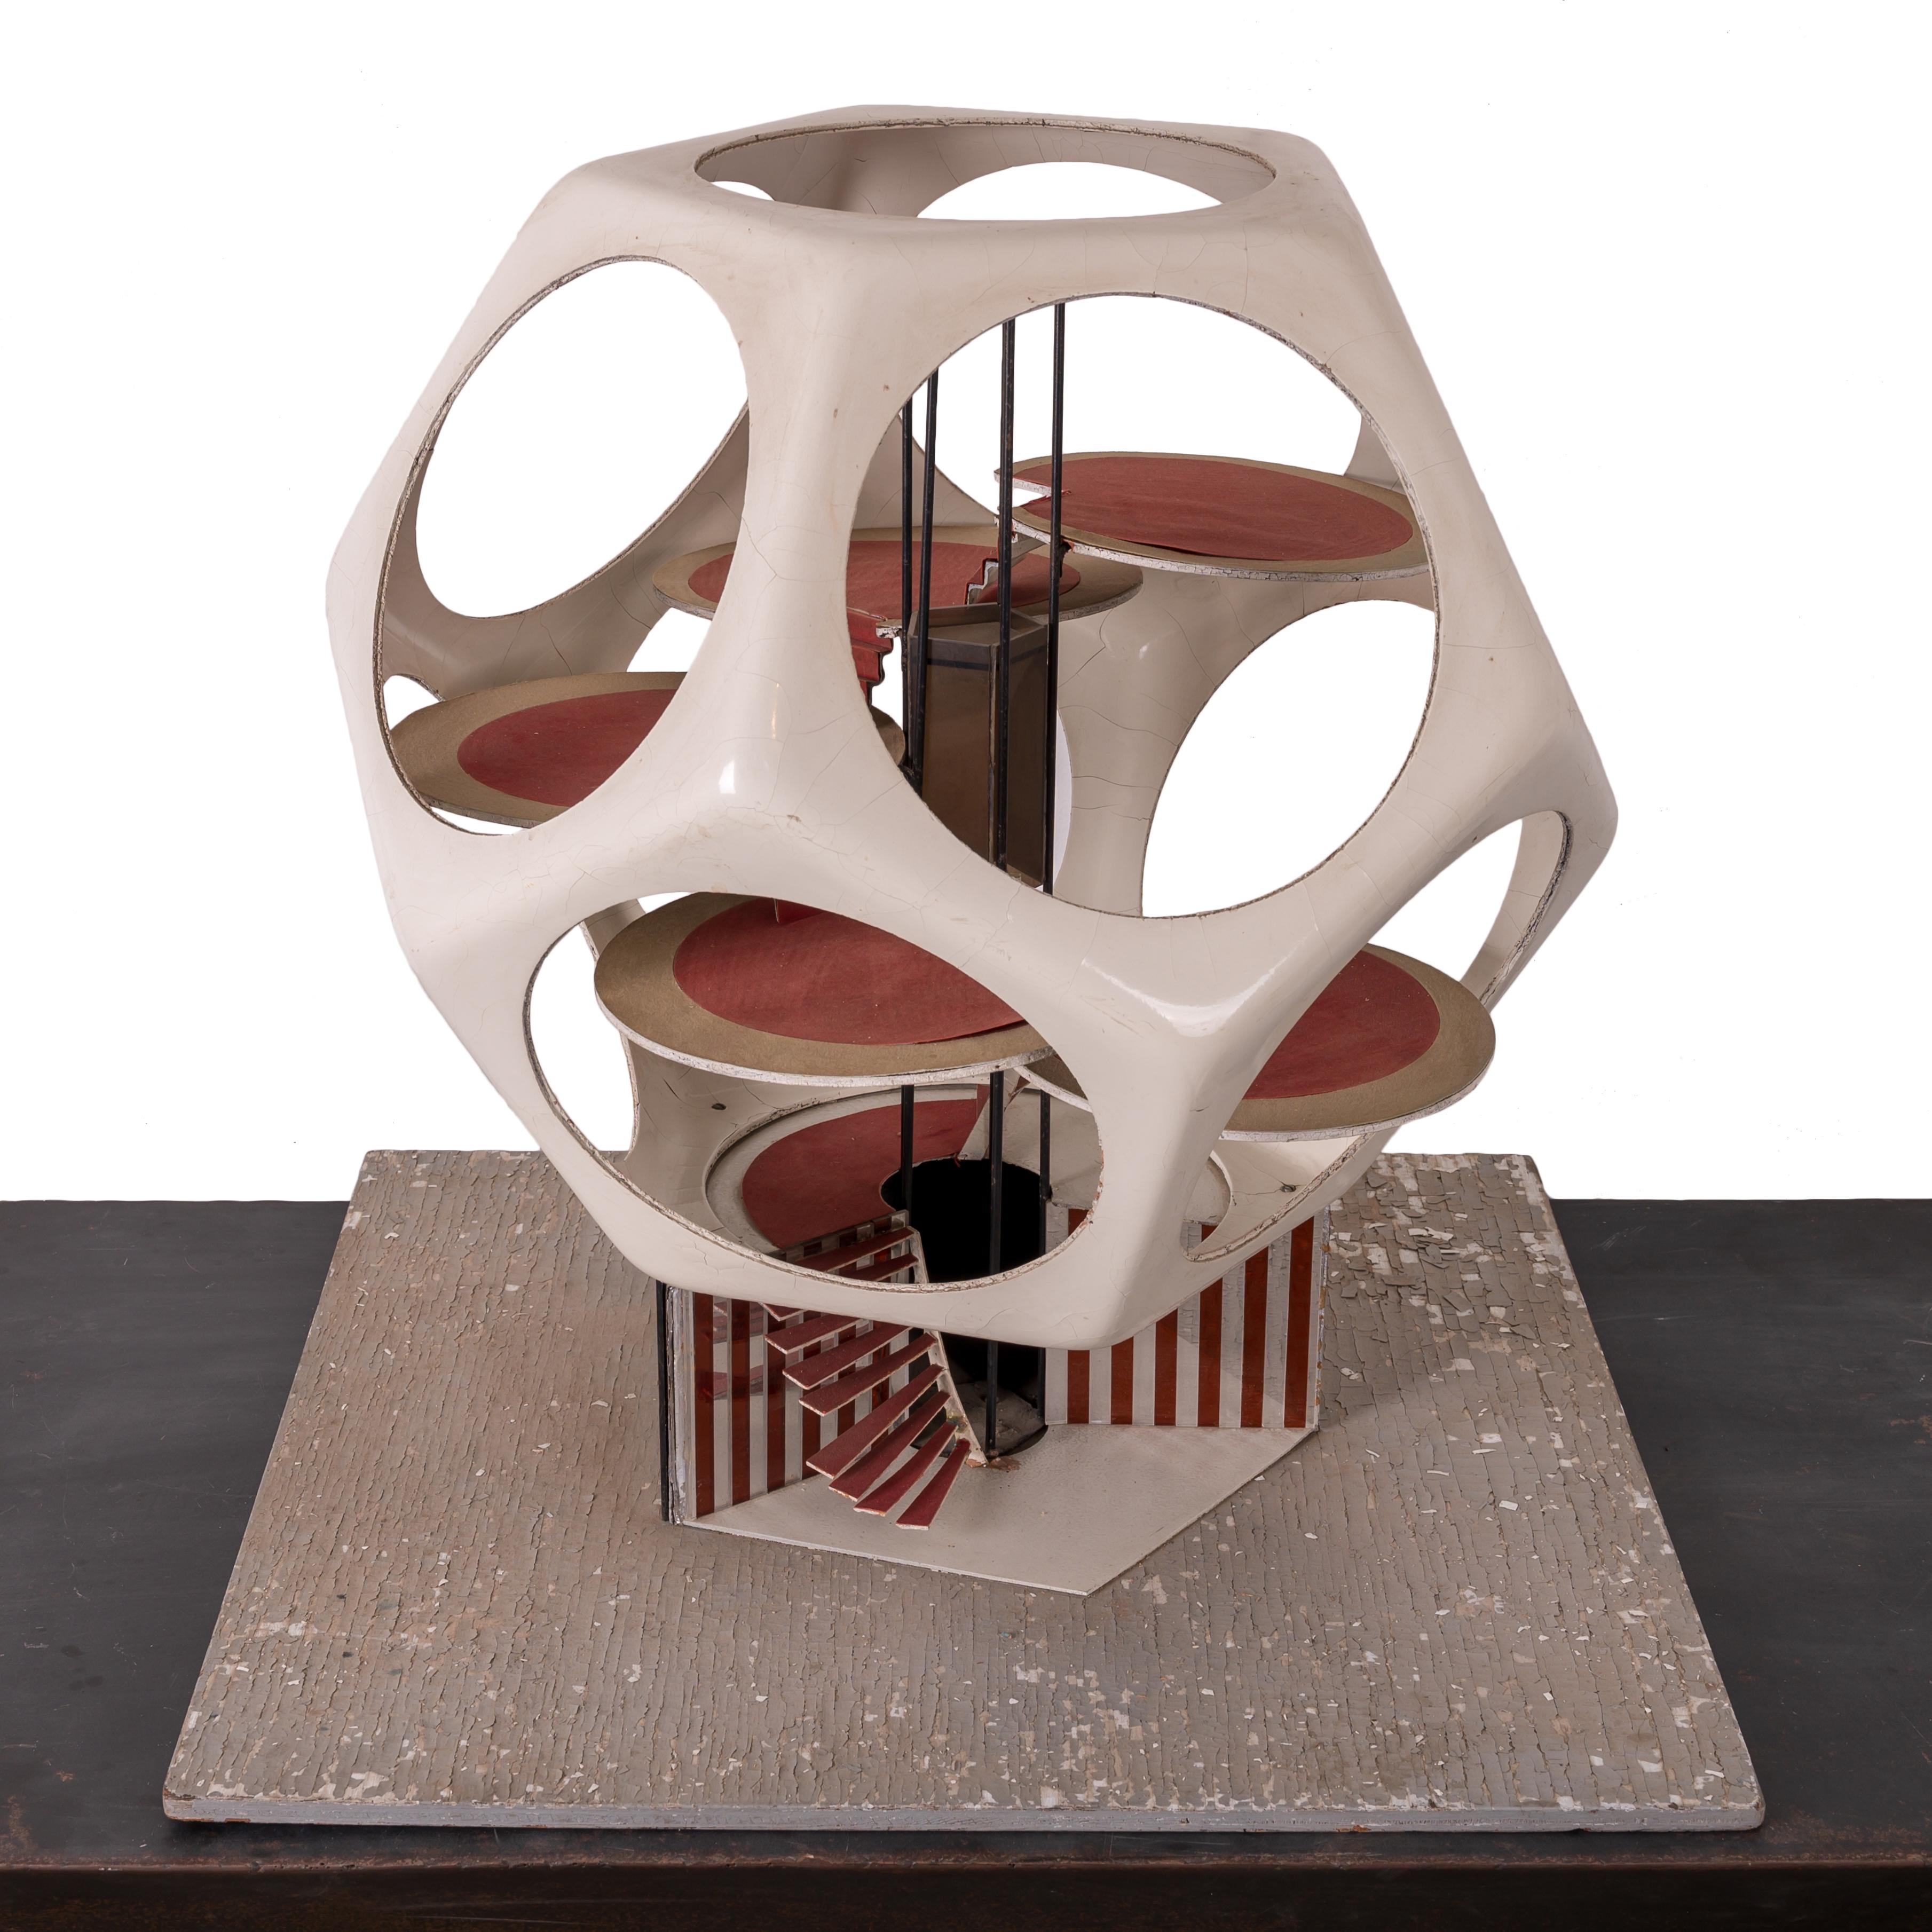 Giovanni 'John' Bucci
(Italo-Amerikaner, 1935-2019)

Ein futuristisches Dodekaeder-Hausmodell.  
Glasfaser, Acryl, Stahl und verschiedene Medien

Das Haus ist 25 Zoll breit und tief und 25 Zoll hoch.
Montiert auf einem Brett, das 27 Zoll im Quadrat